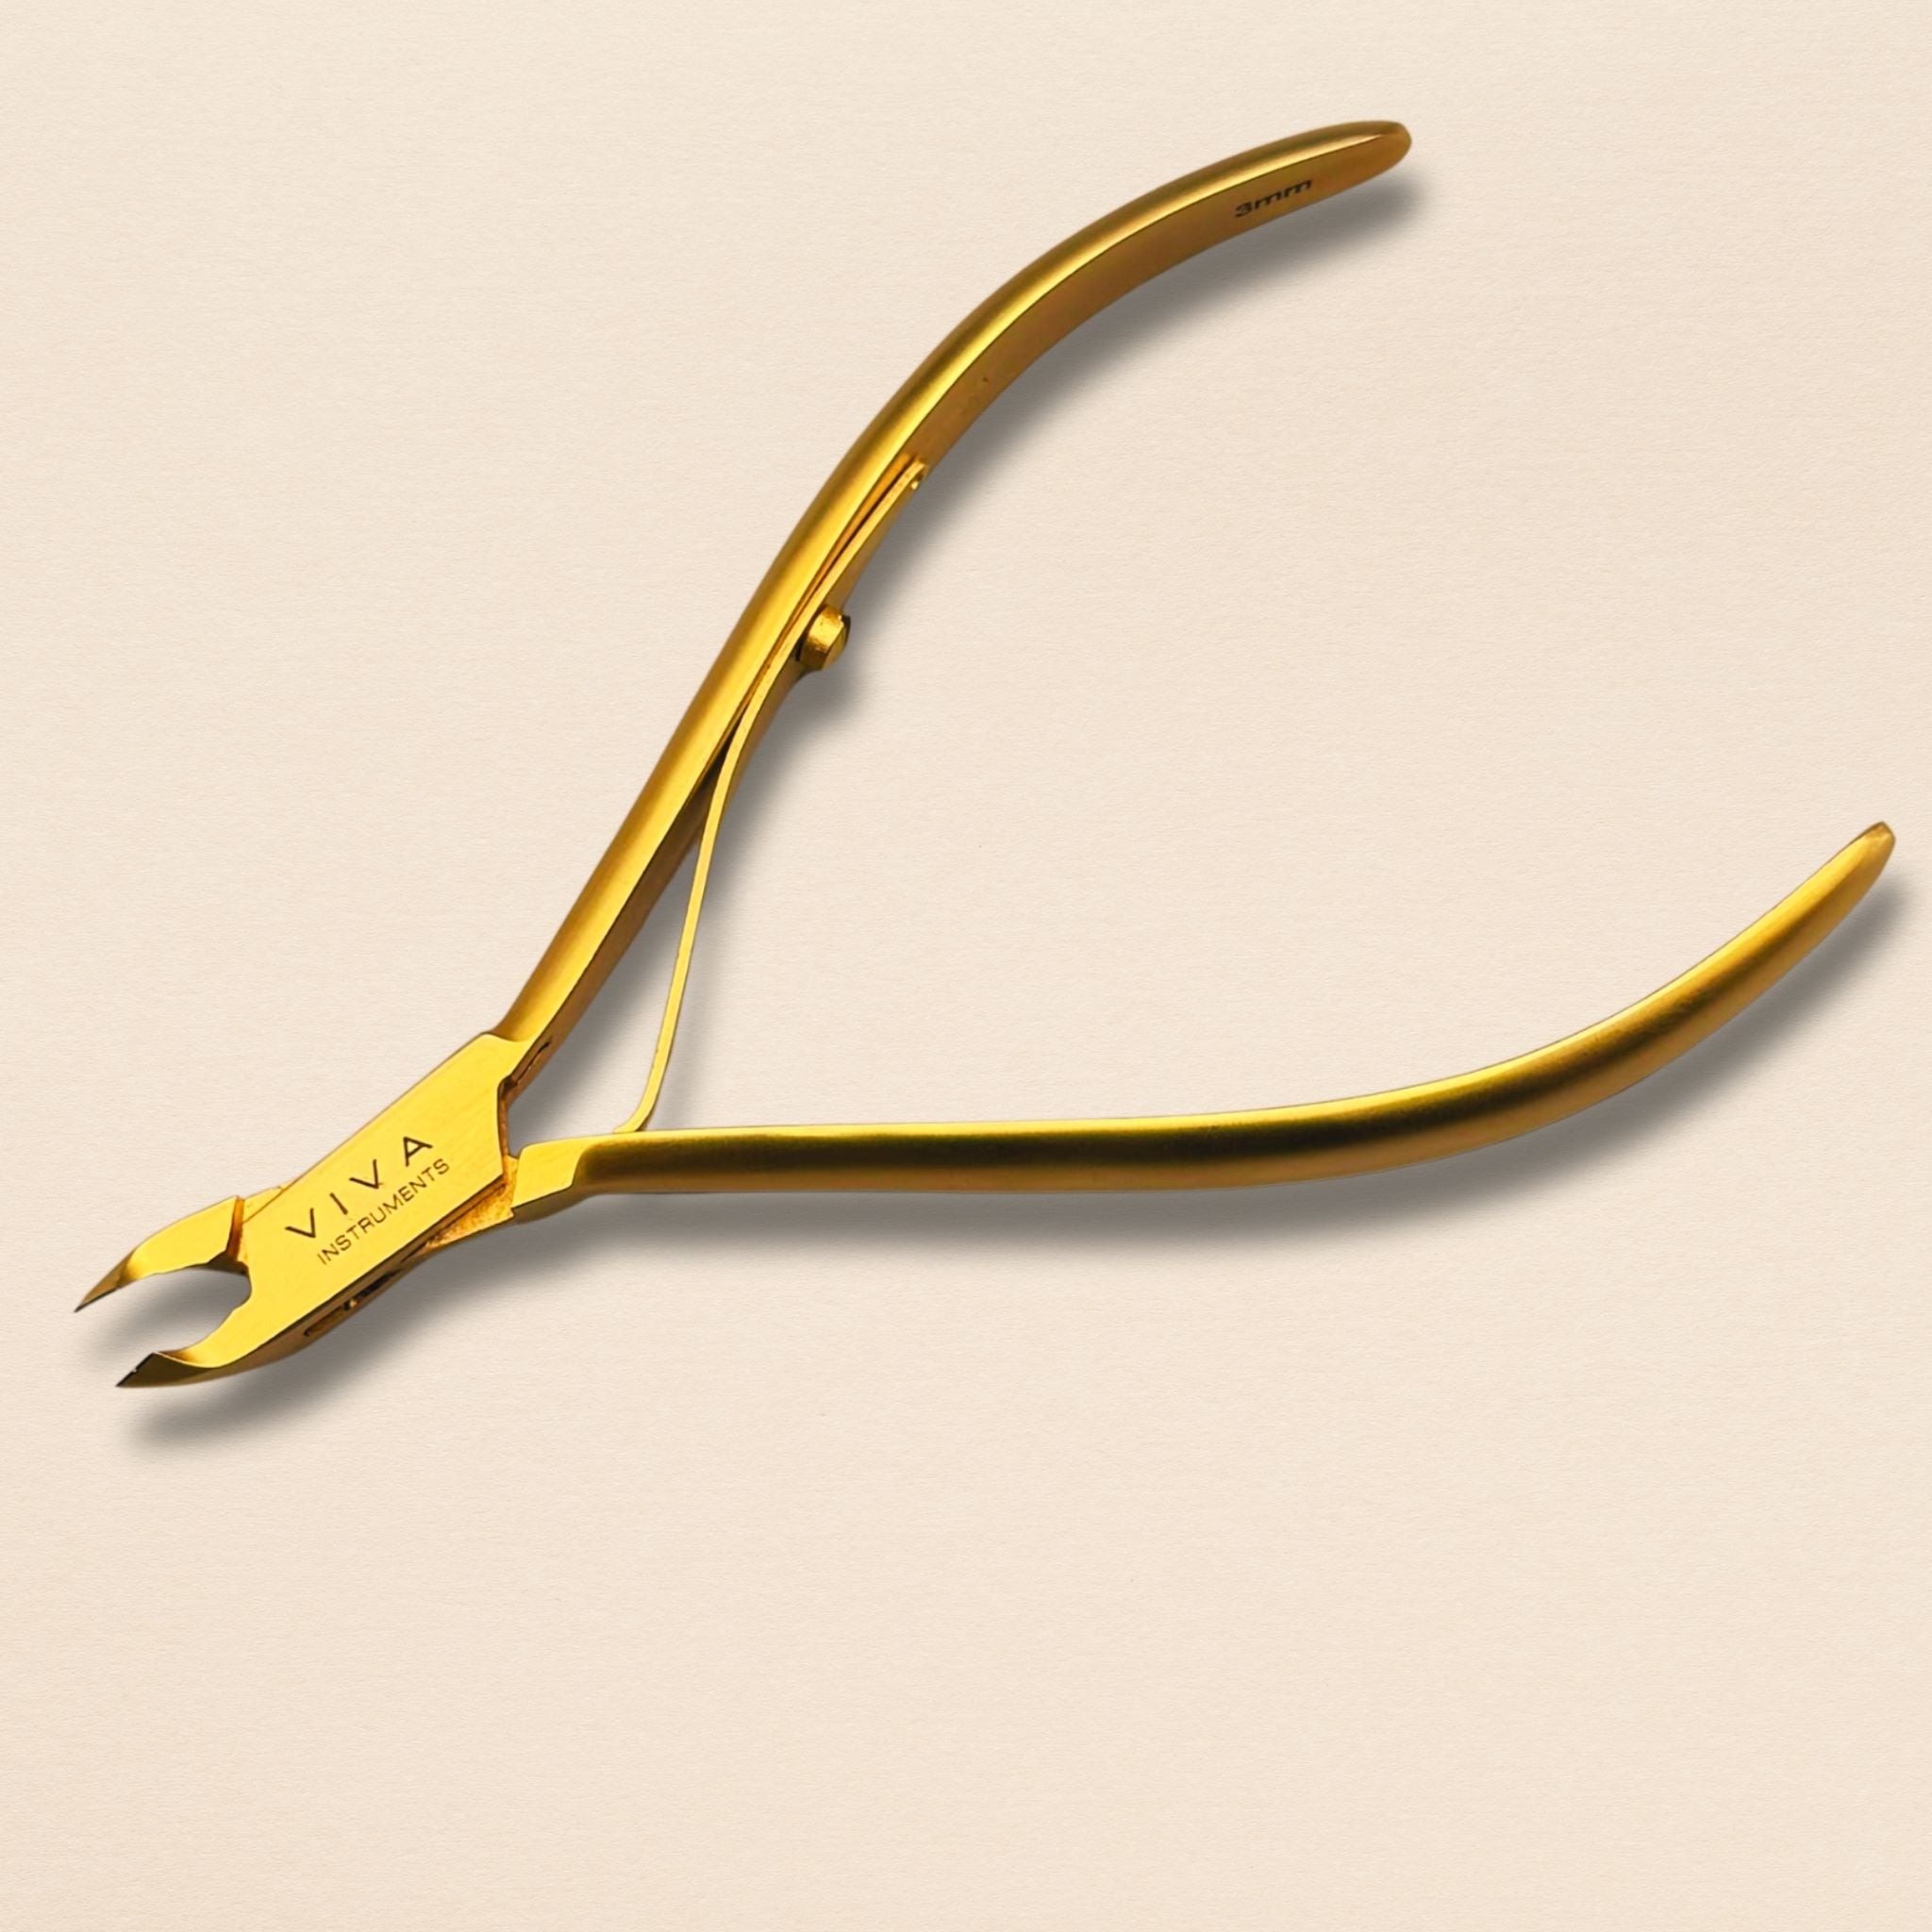 Cuticle nipper cutter - viva instruments